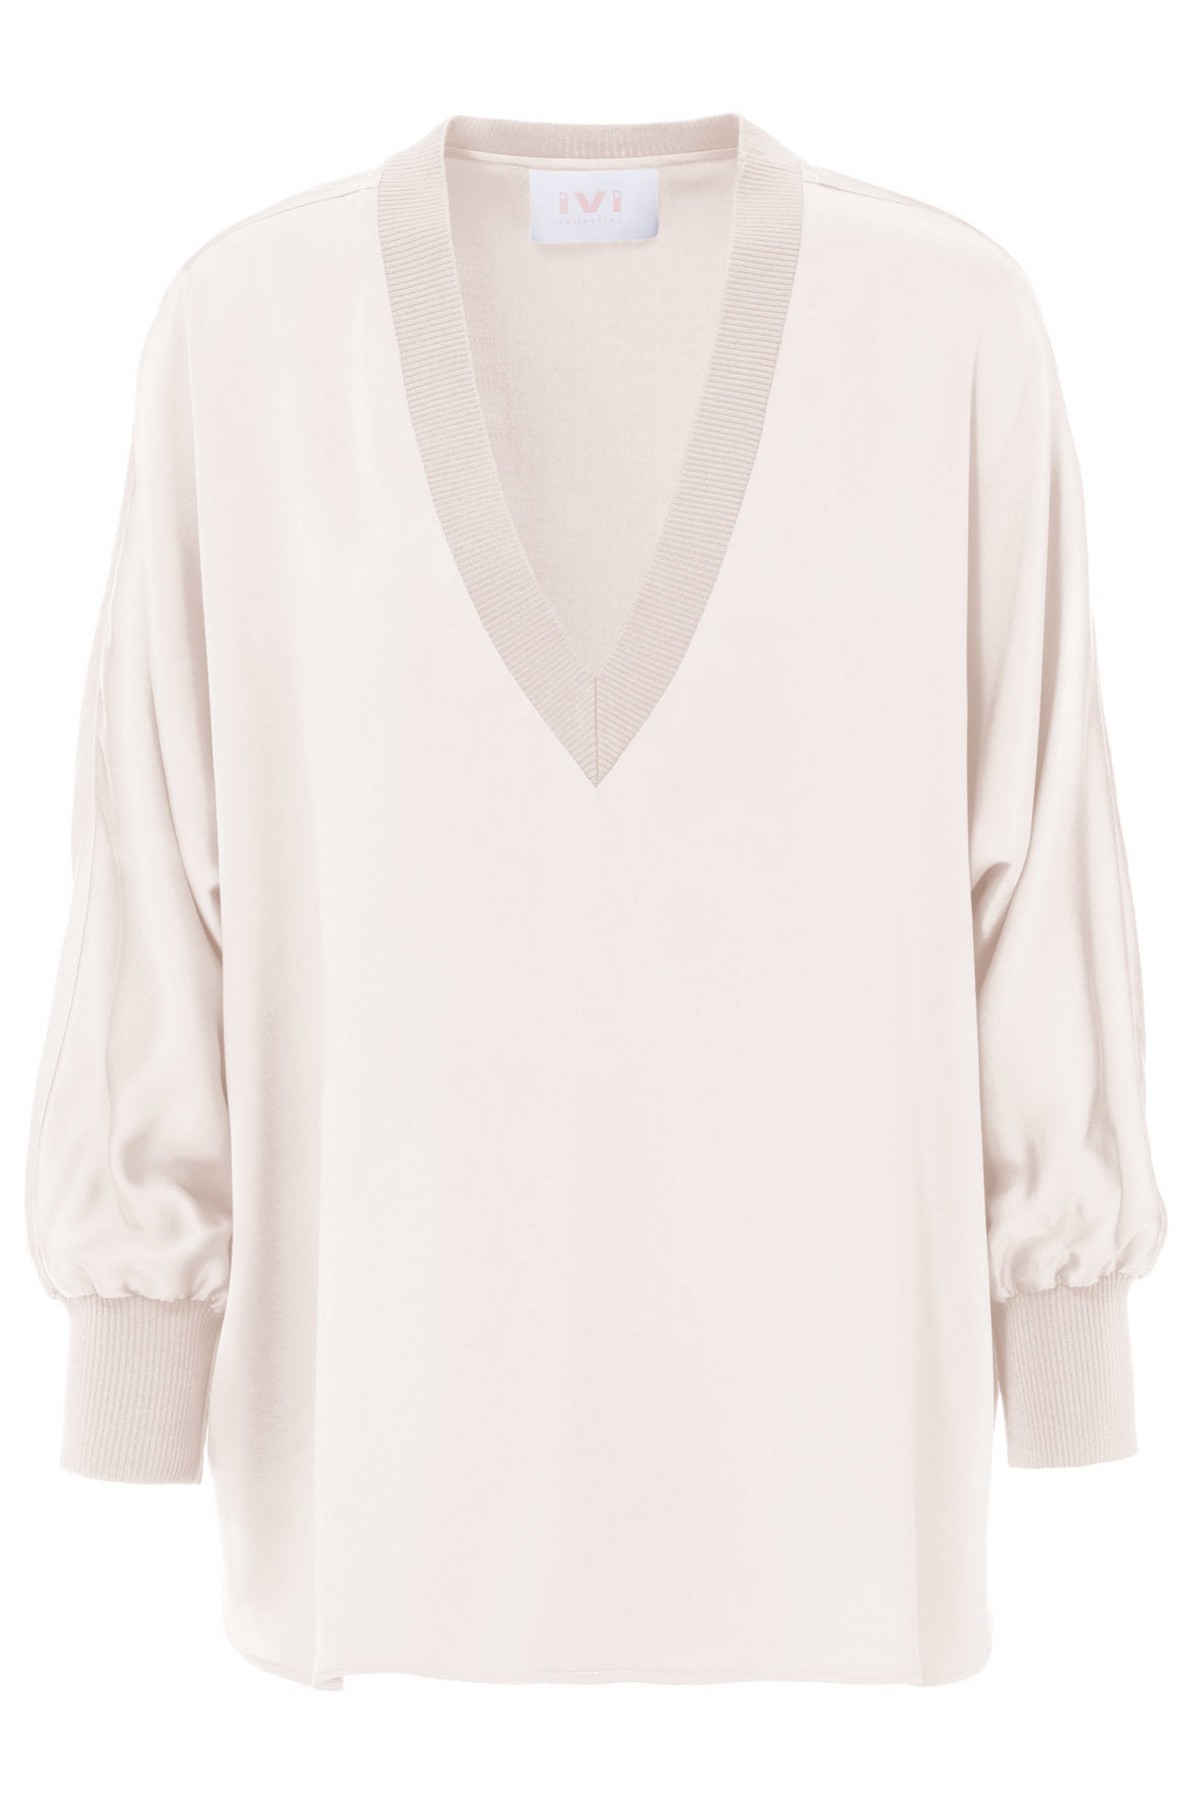 Shirtbloes solid silk in de kleur off white van het merk Ivi Collection